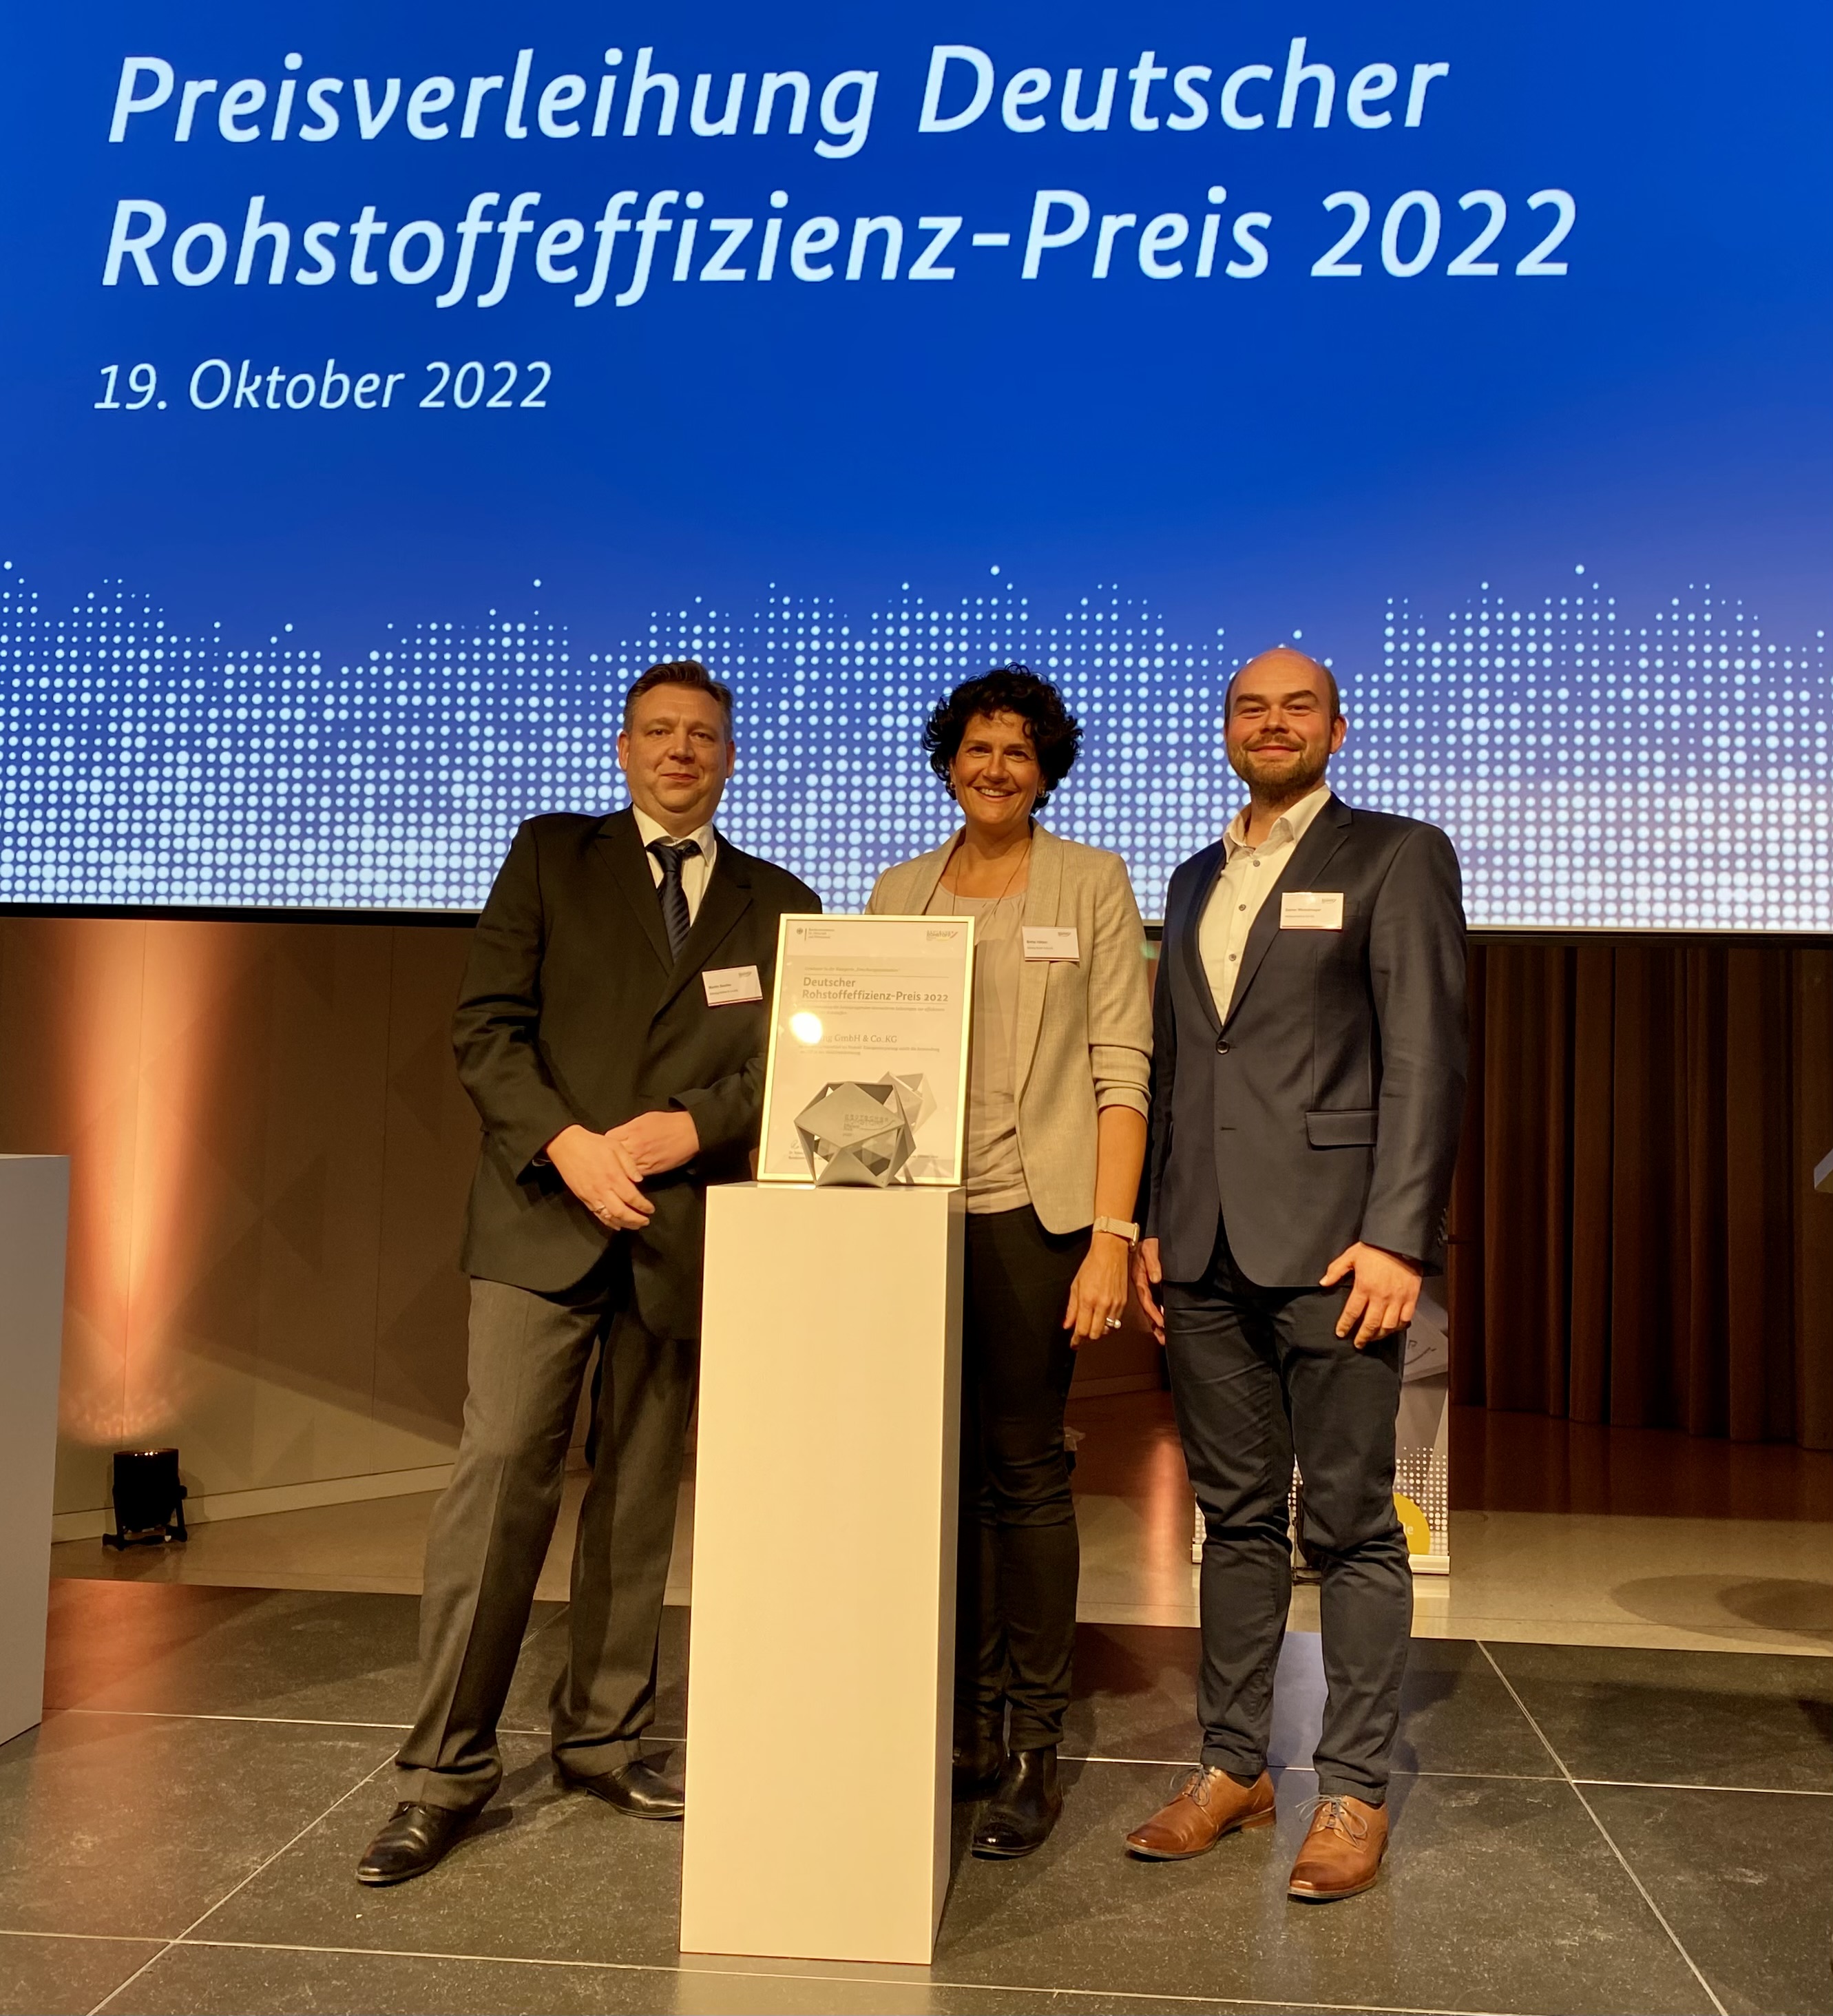 Möhling erhält den Deutschen Rohstoffeffizienz-Preis 2022 in der Kategorie Forschung